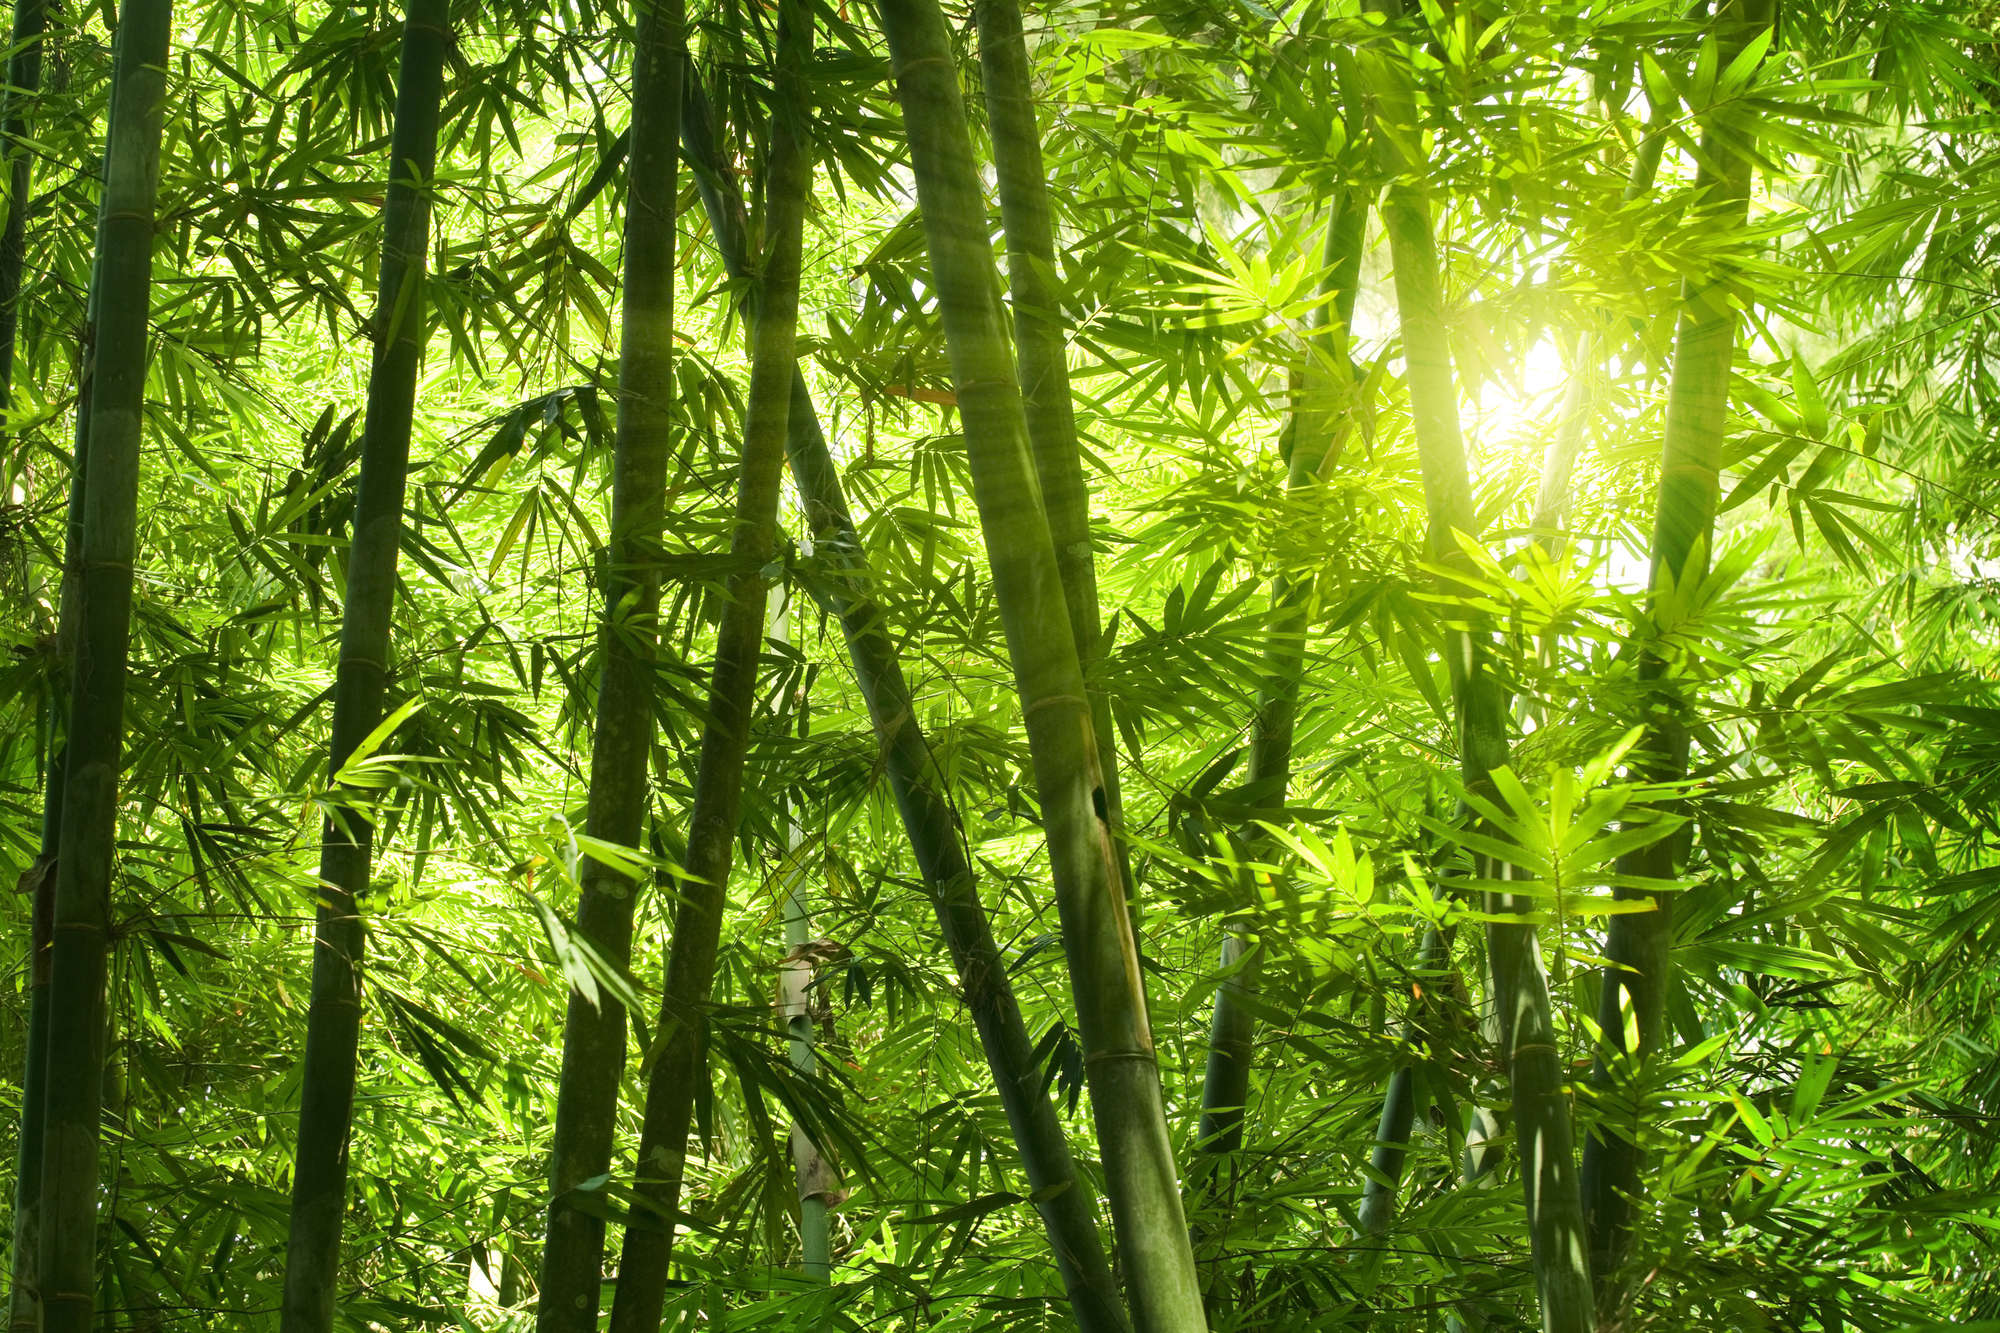             Papel pintado Naturaleza Motivo de bosque de bambú en vellón liso de primera calidad
        